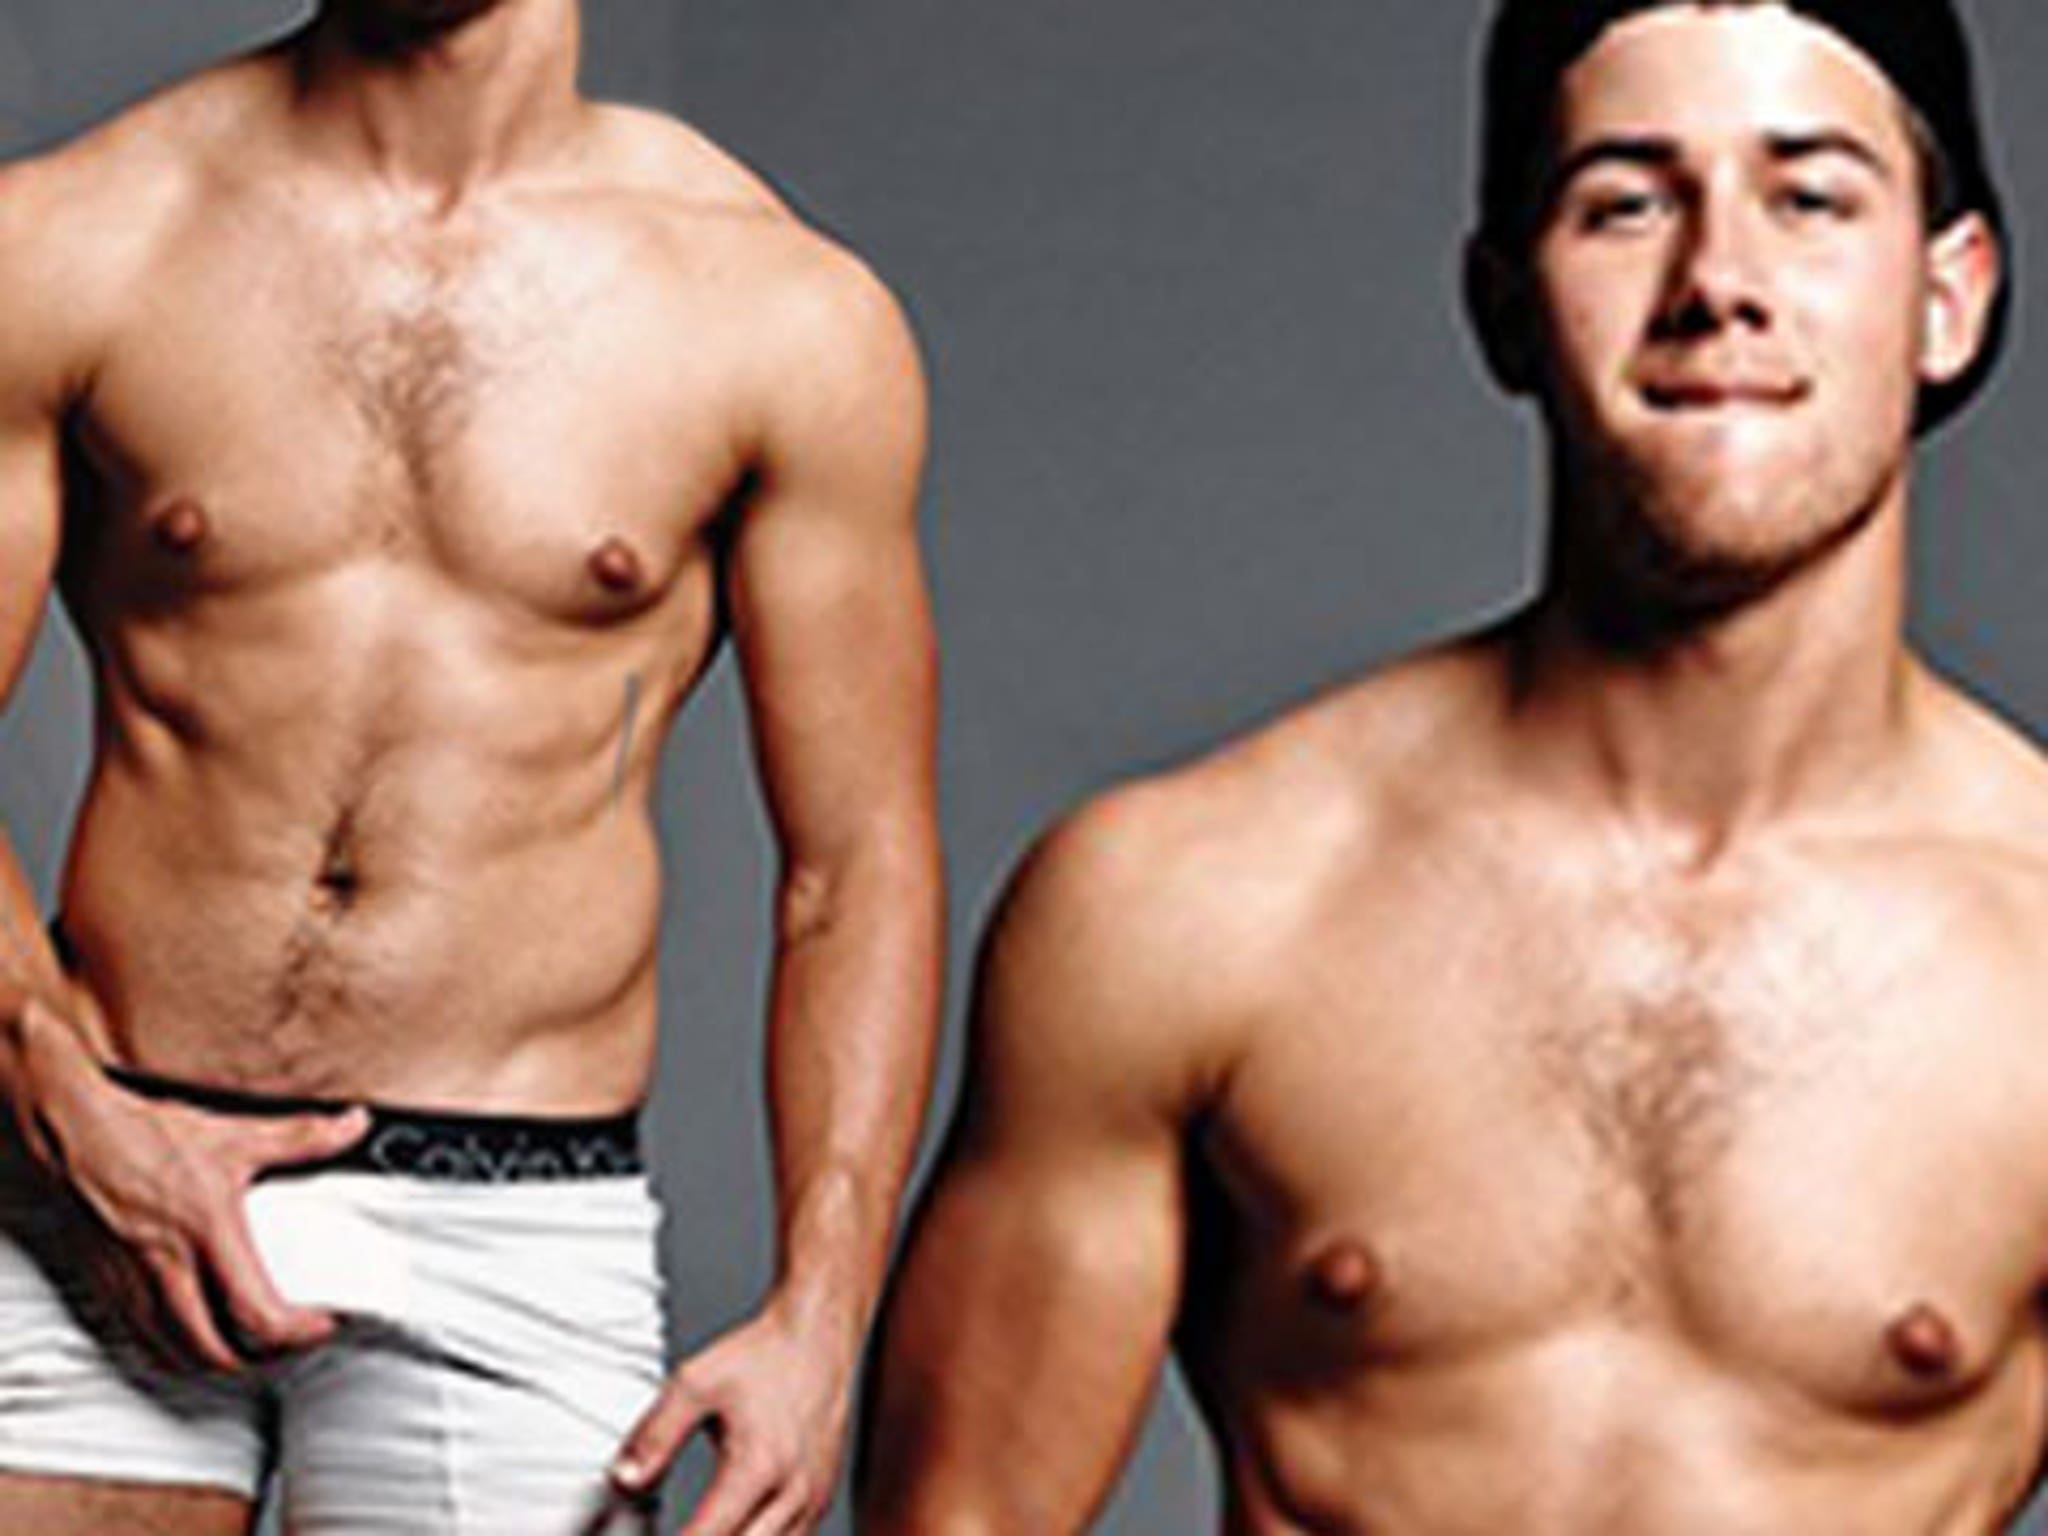 Nick Jonas Bodybuilding Wallpapers